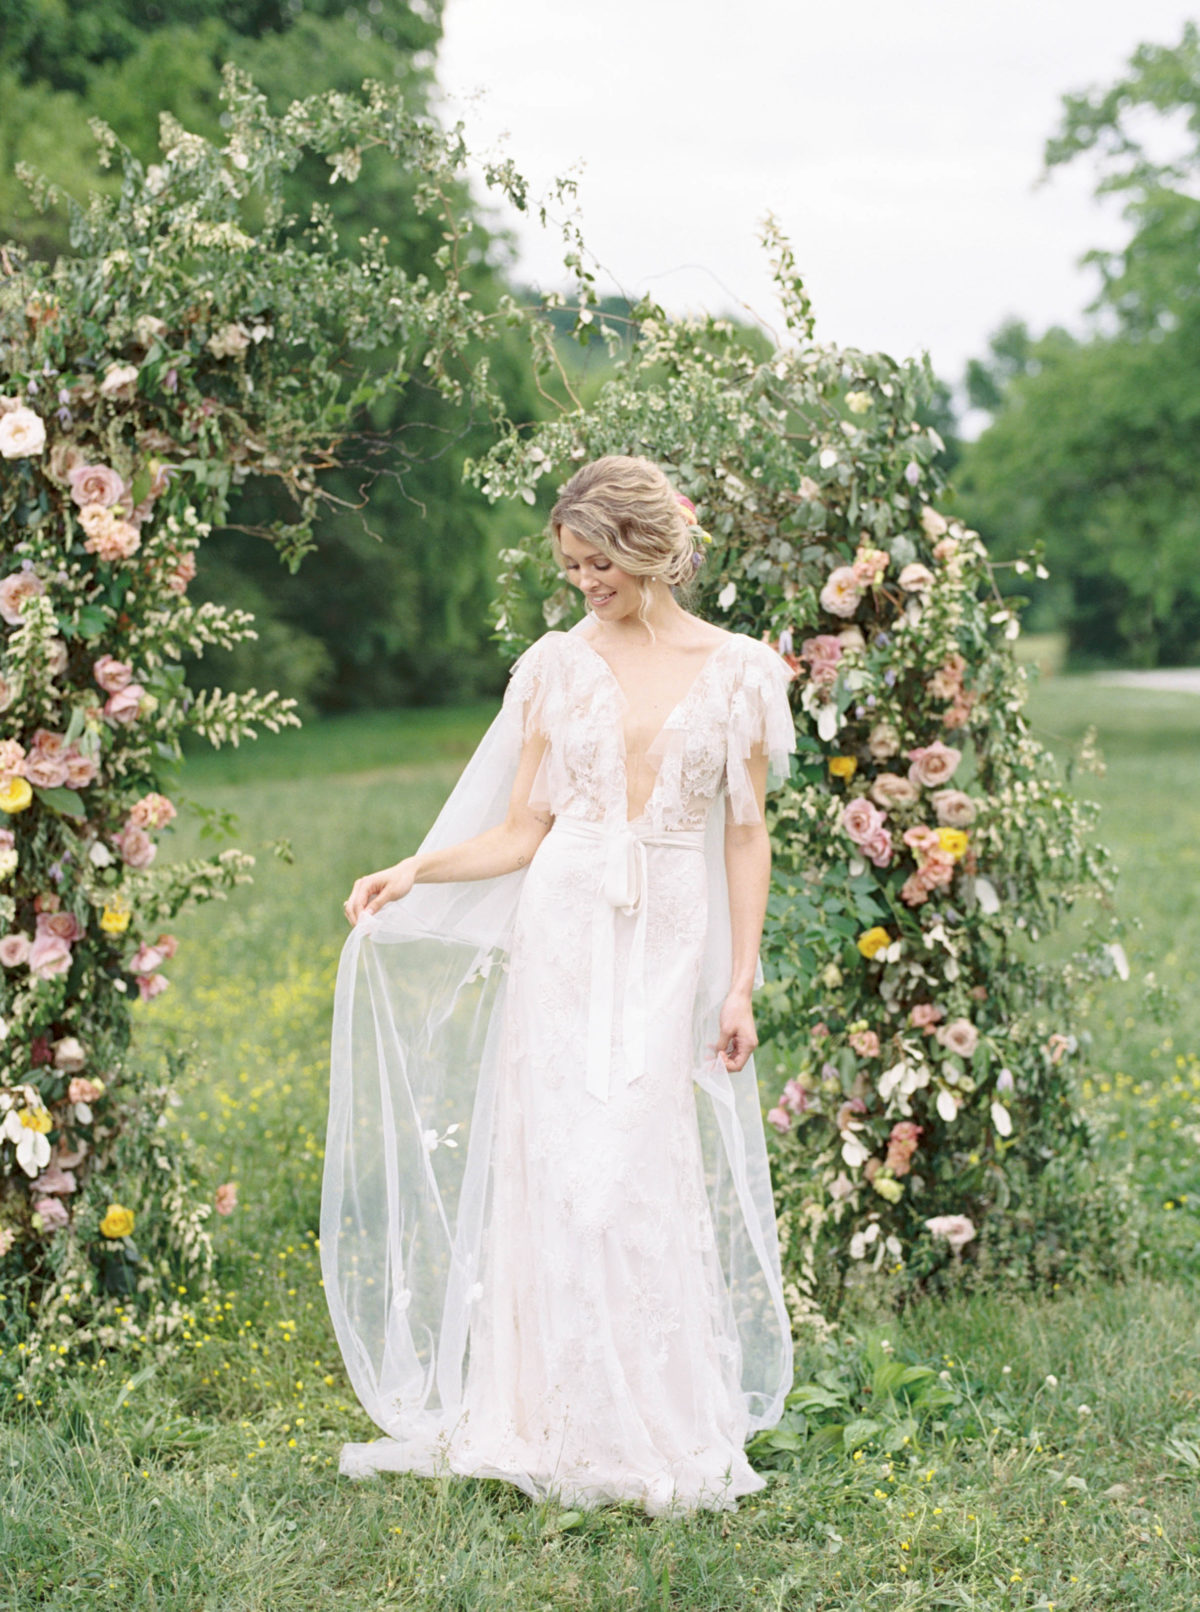 Modern lace wedding dress by Monique Lhuillier Bride.